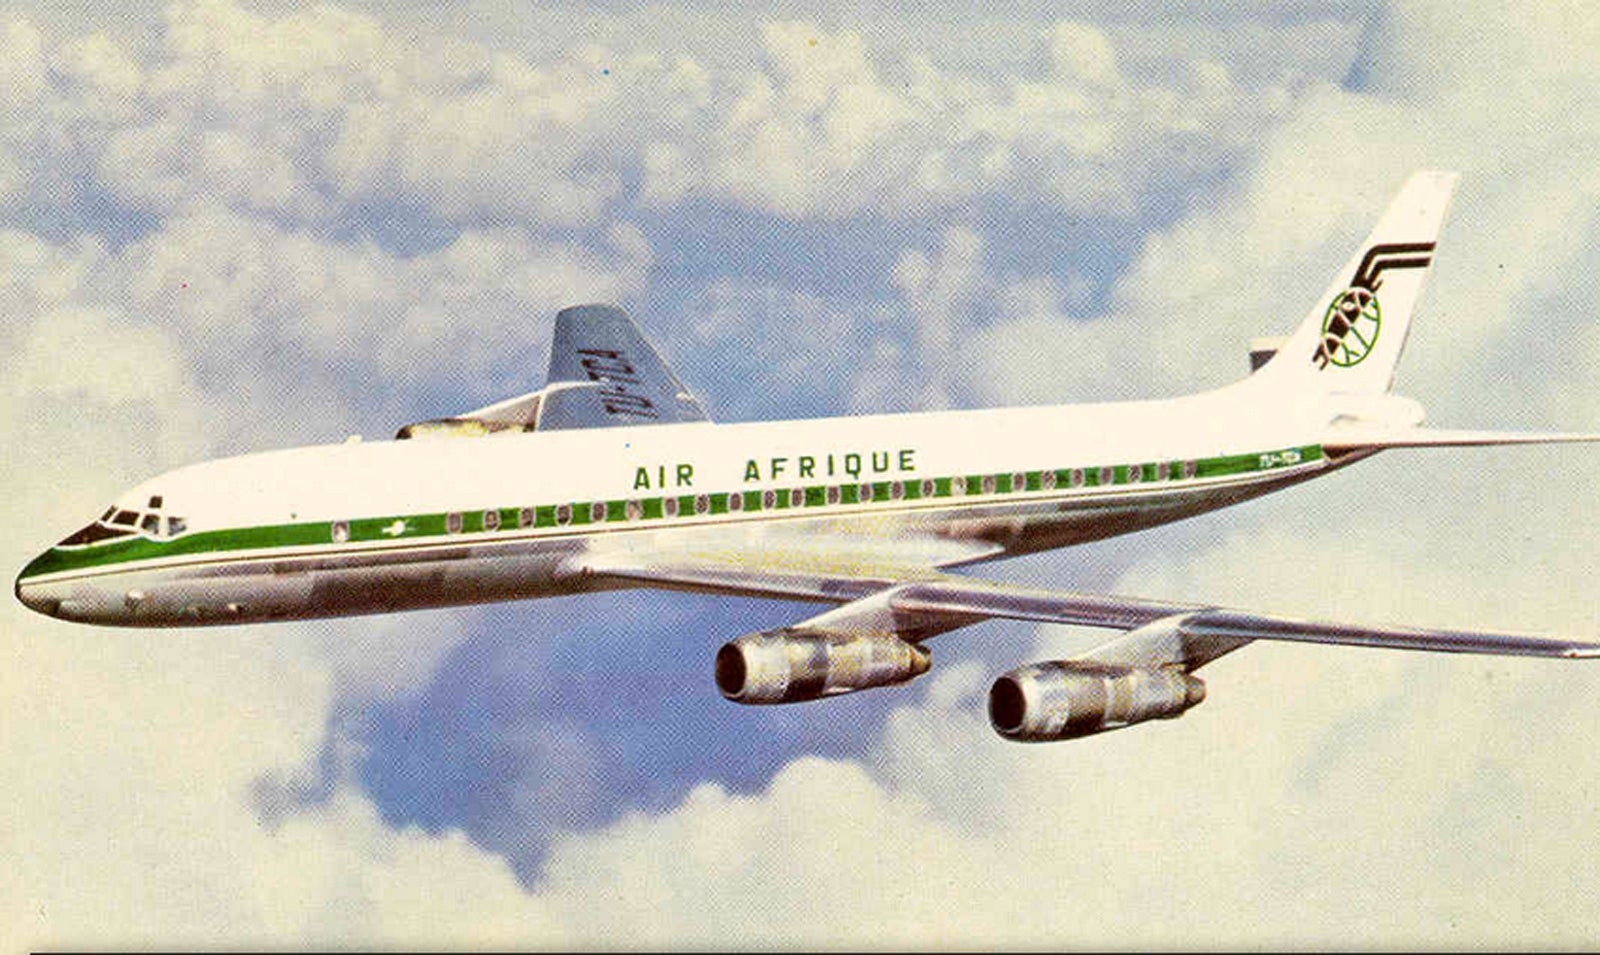 Air Afrique DC-8